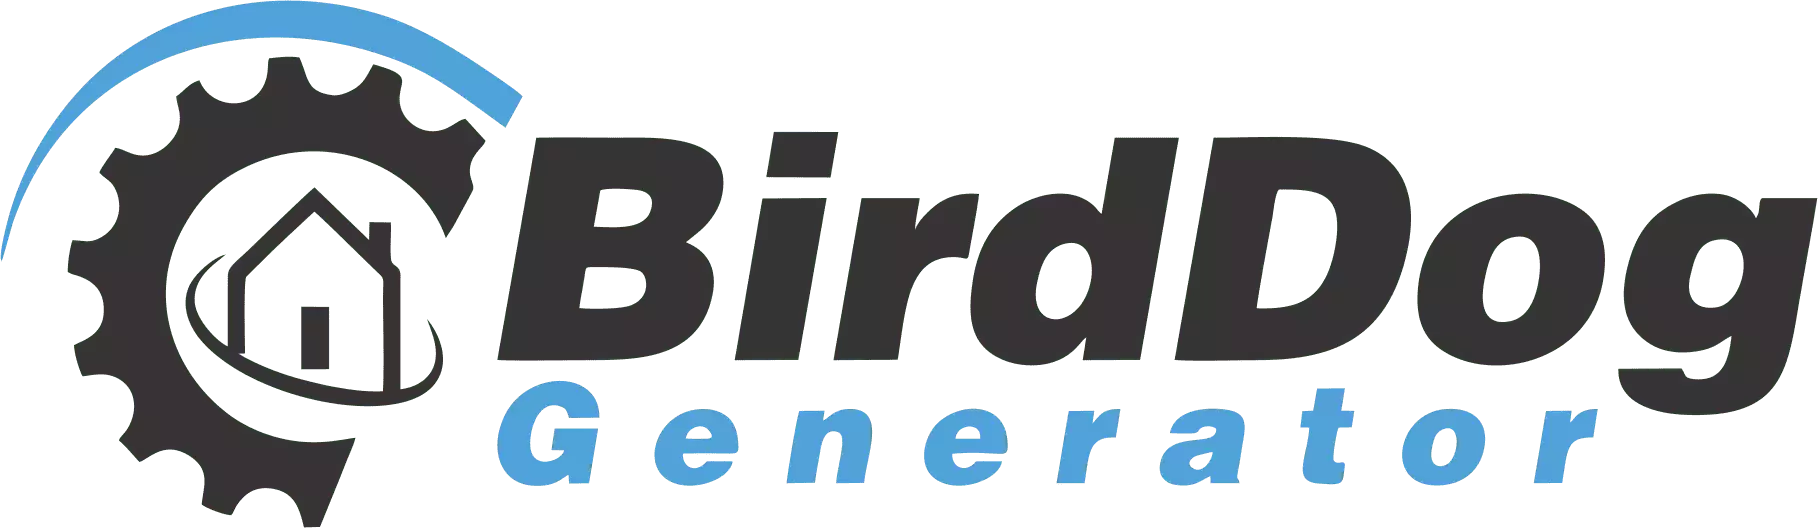 Birddog generator